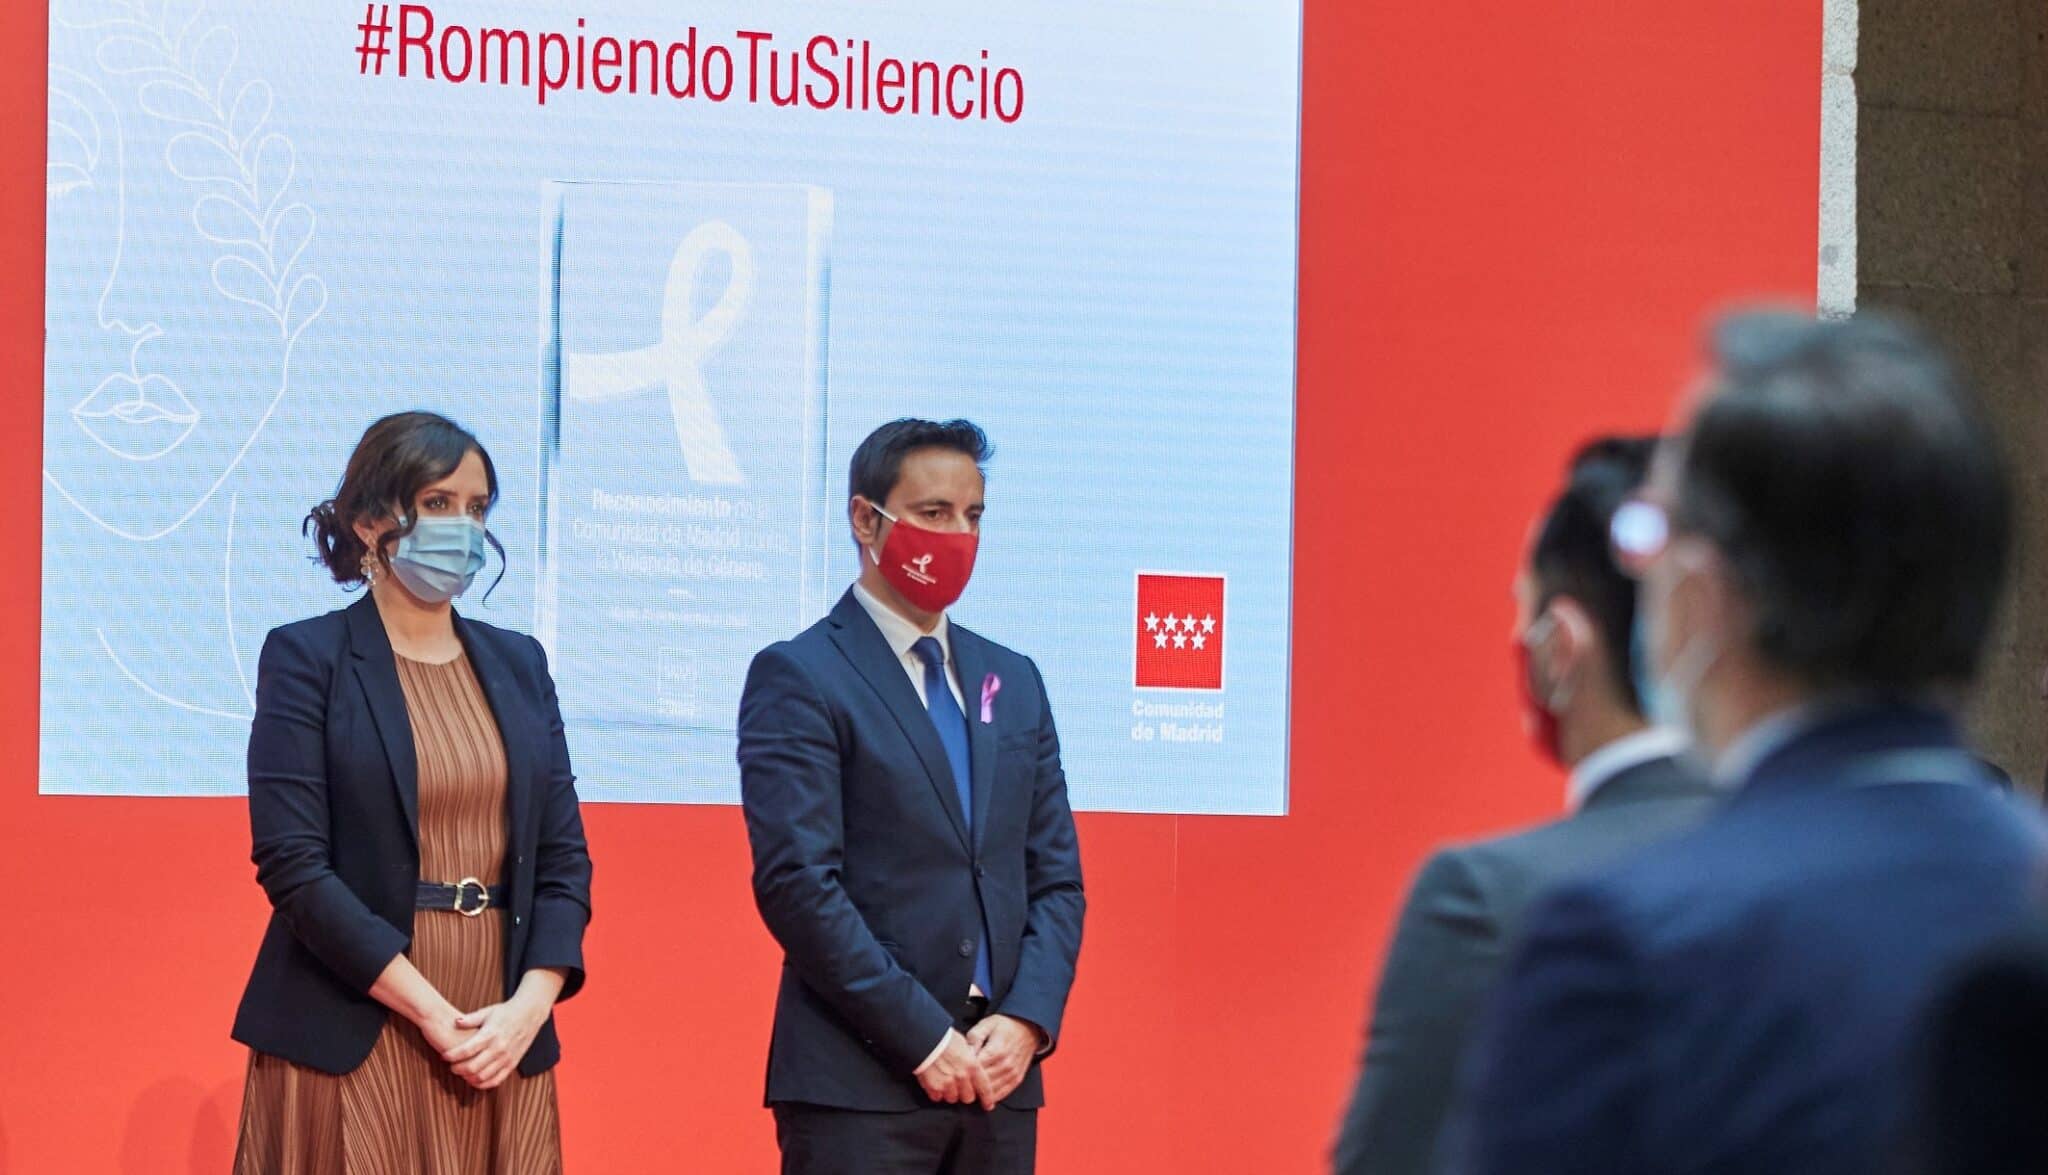 La presidenta Díaz Ayuso y el consejero de Políticas Sociales, Javier Luengo, en un acto oficial.